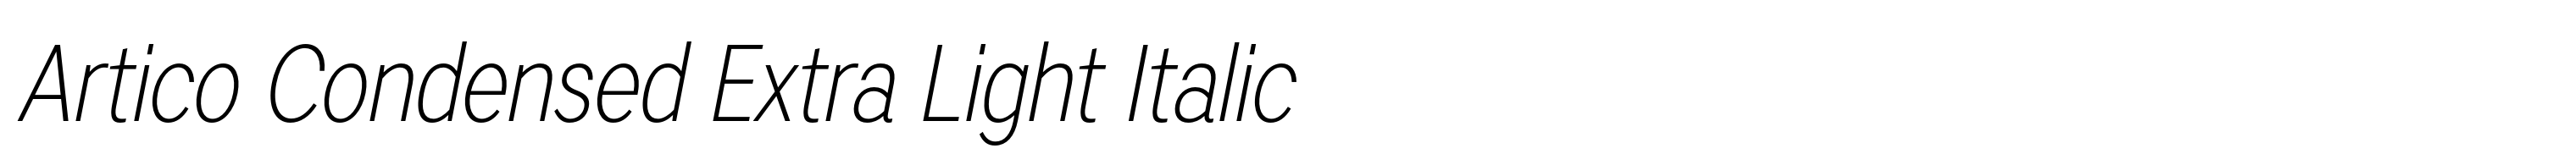 Artico Condensed Extra Light Italic